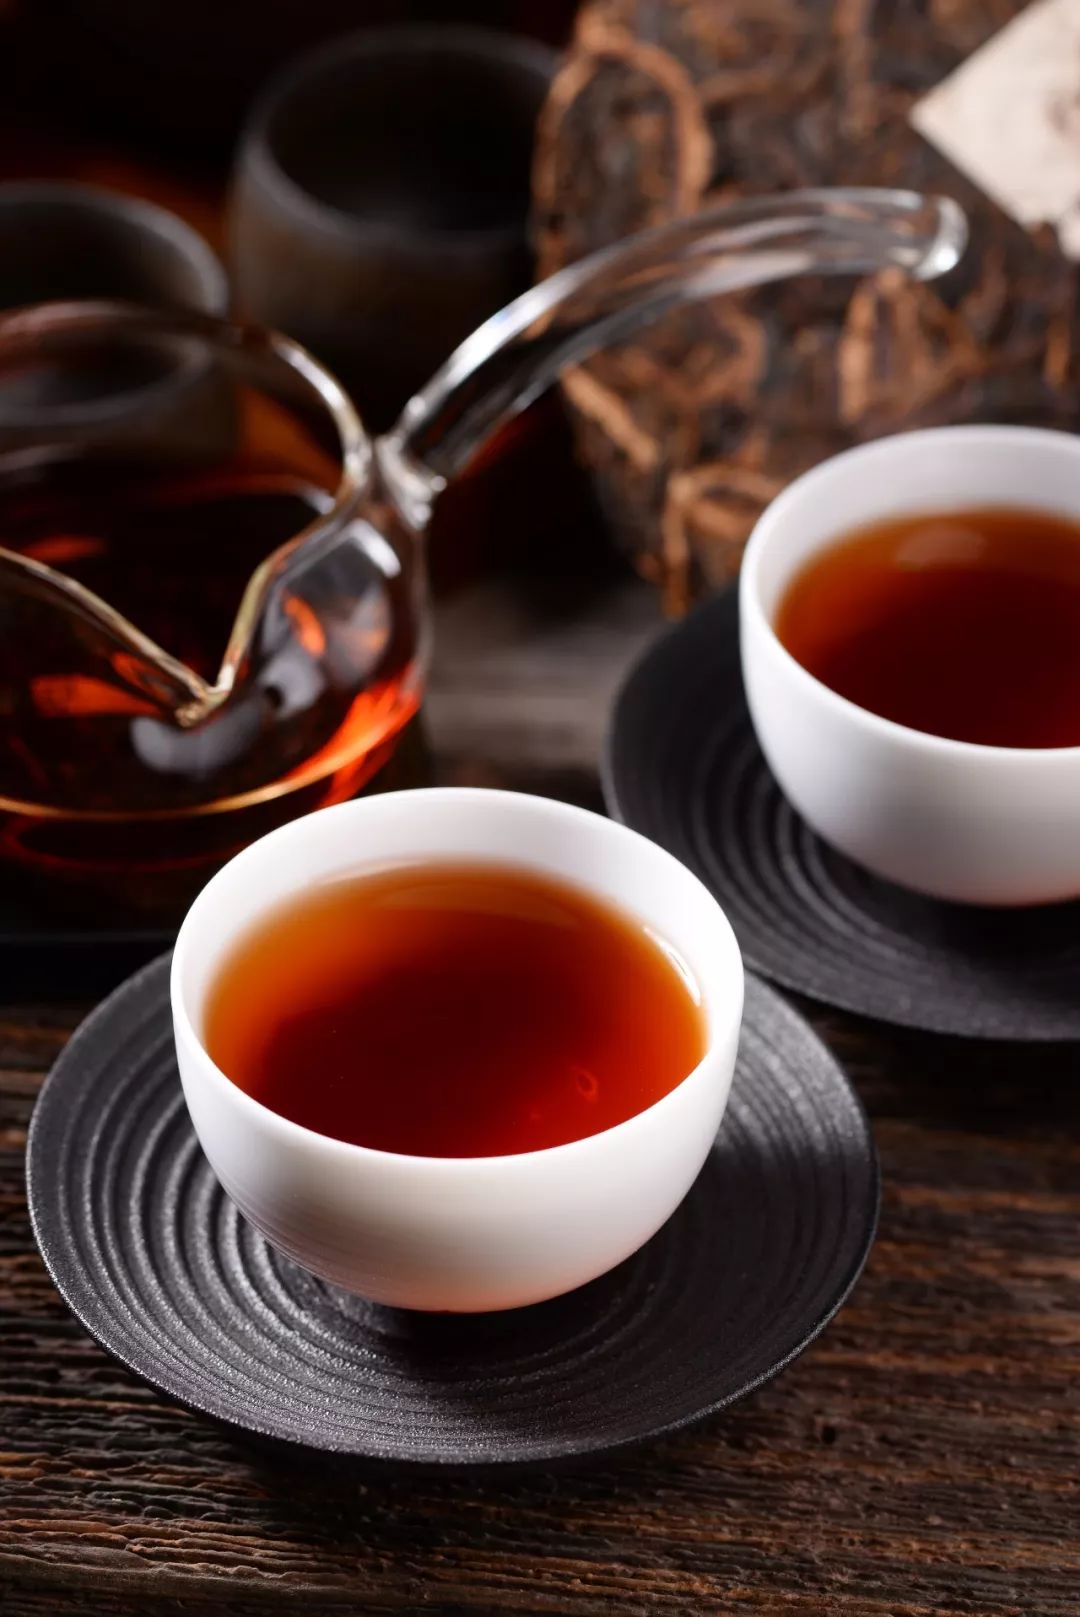 揭秘普洱茶的顶级魅力:不确定性美